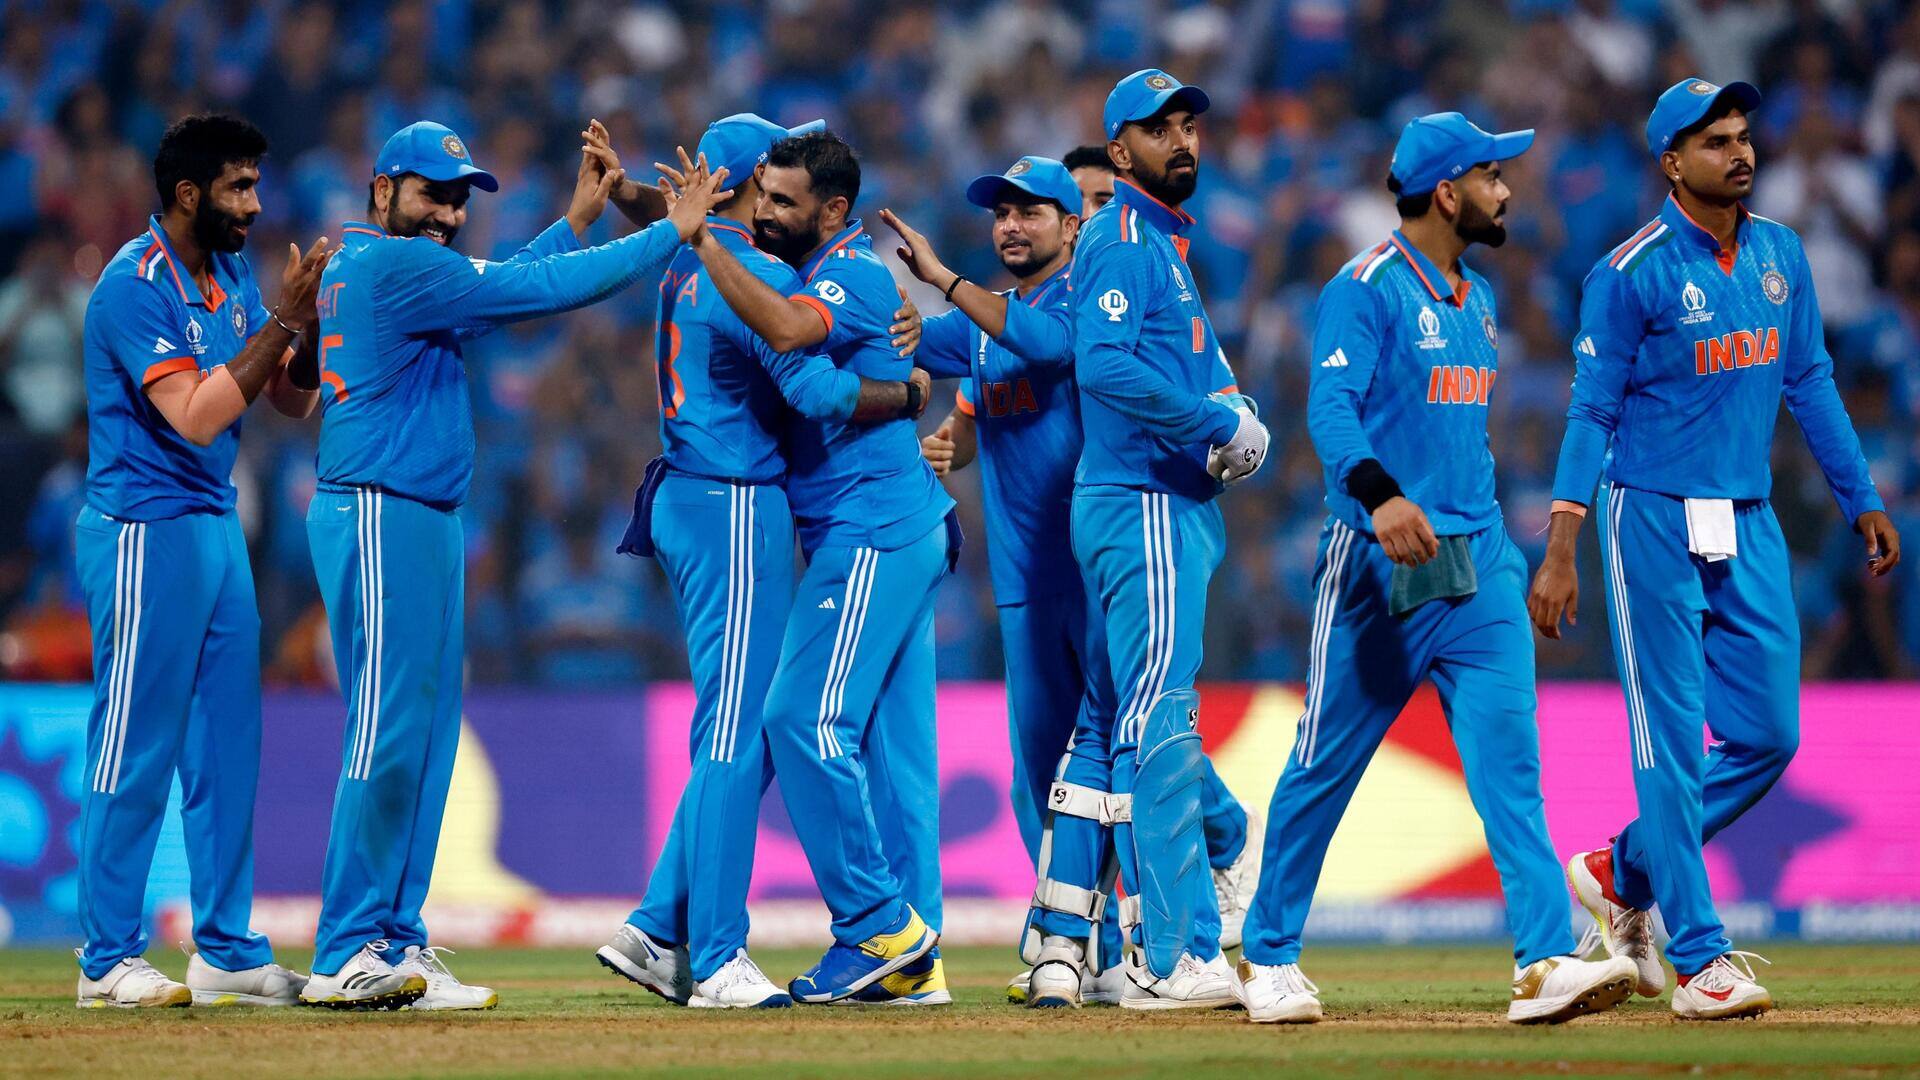 भारतीय गेंदबाजों ने एक विश्व कप संस्करण में चटकाए सर्वाधिक विकेट, जानिए आंकड़े